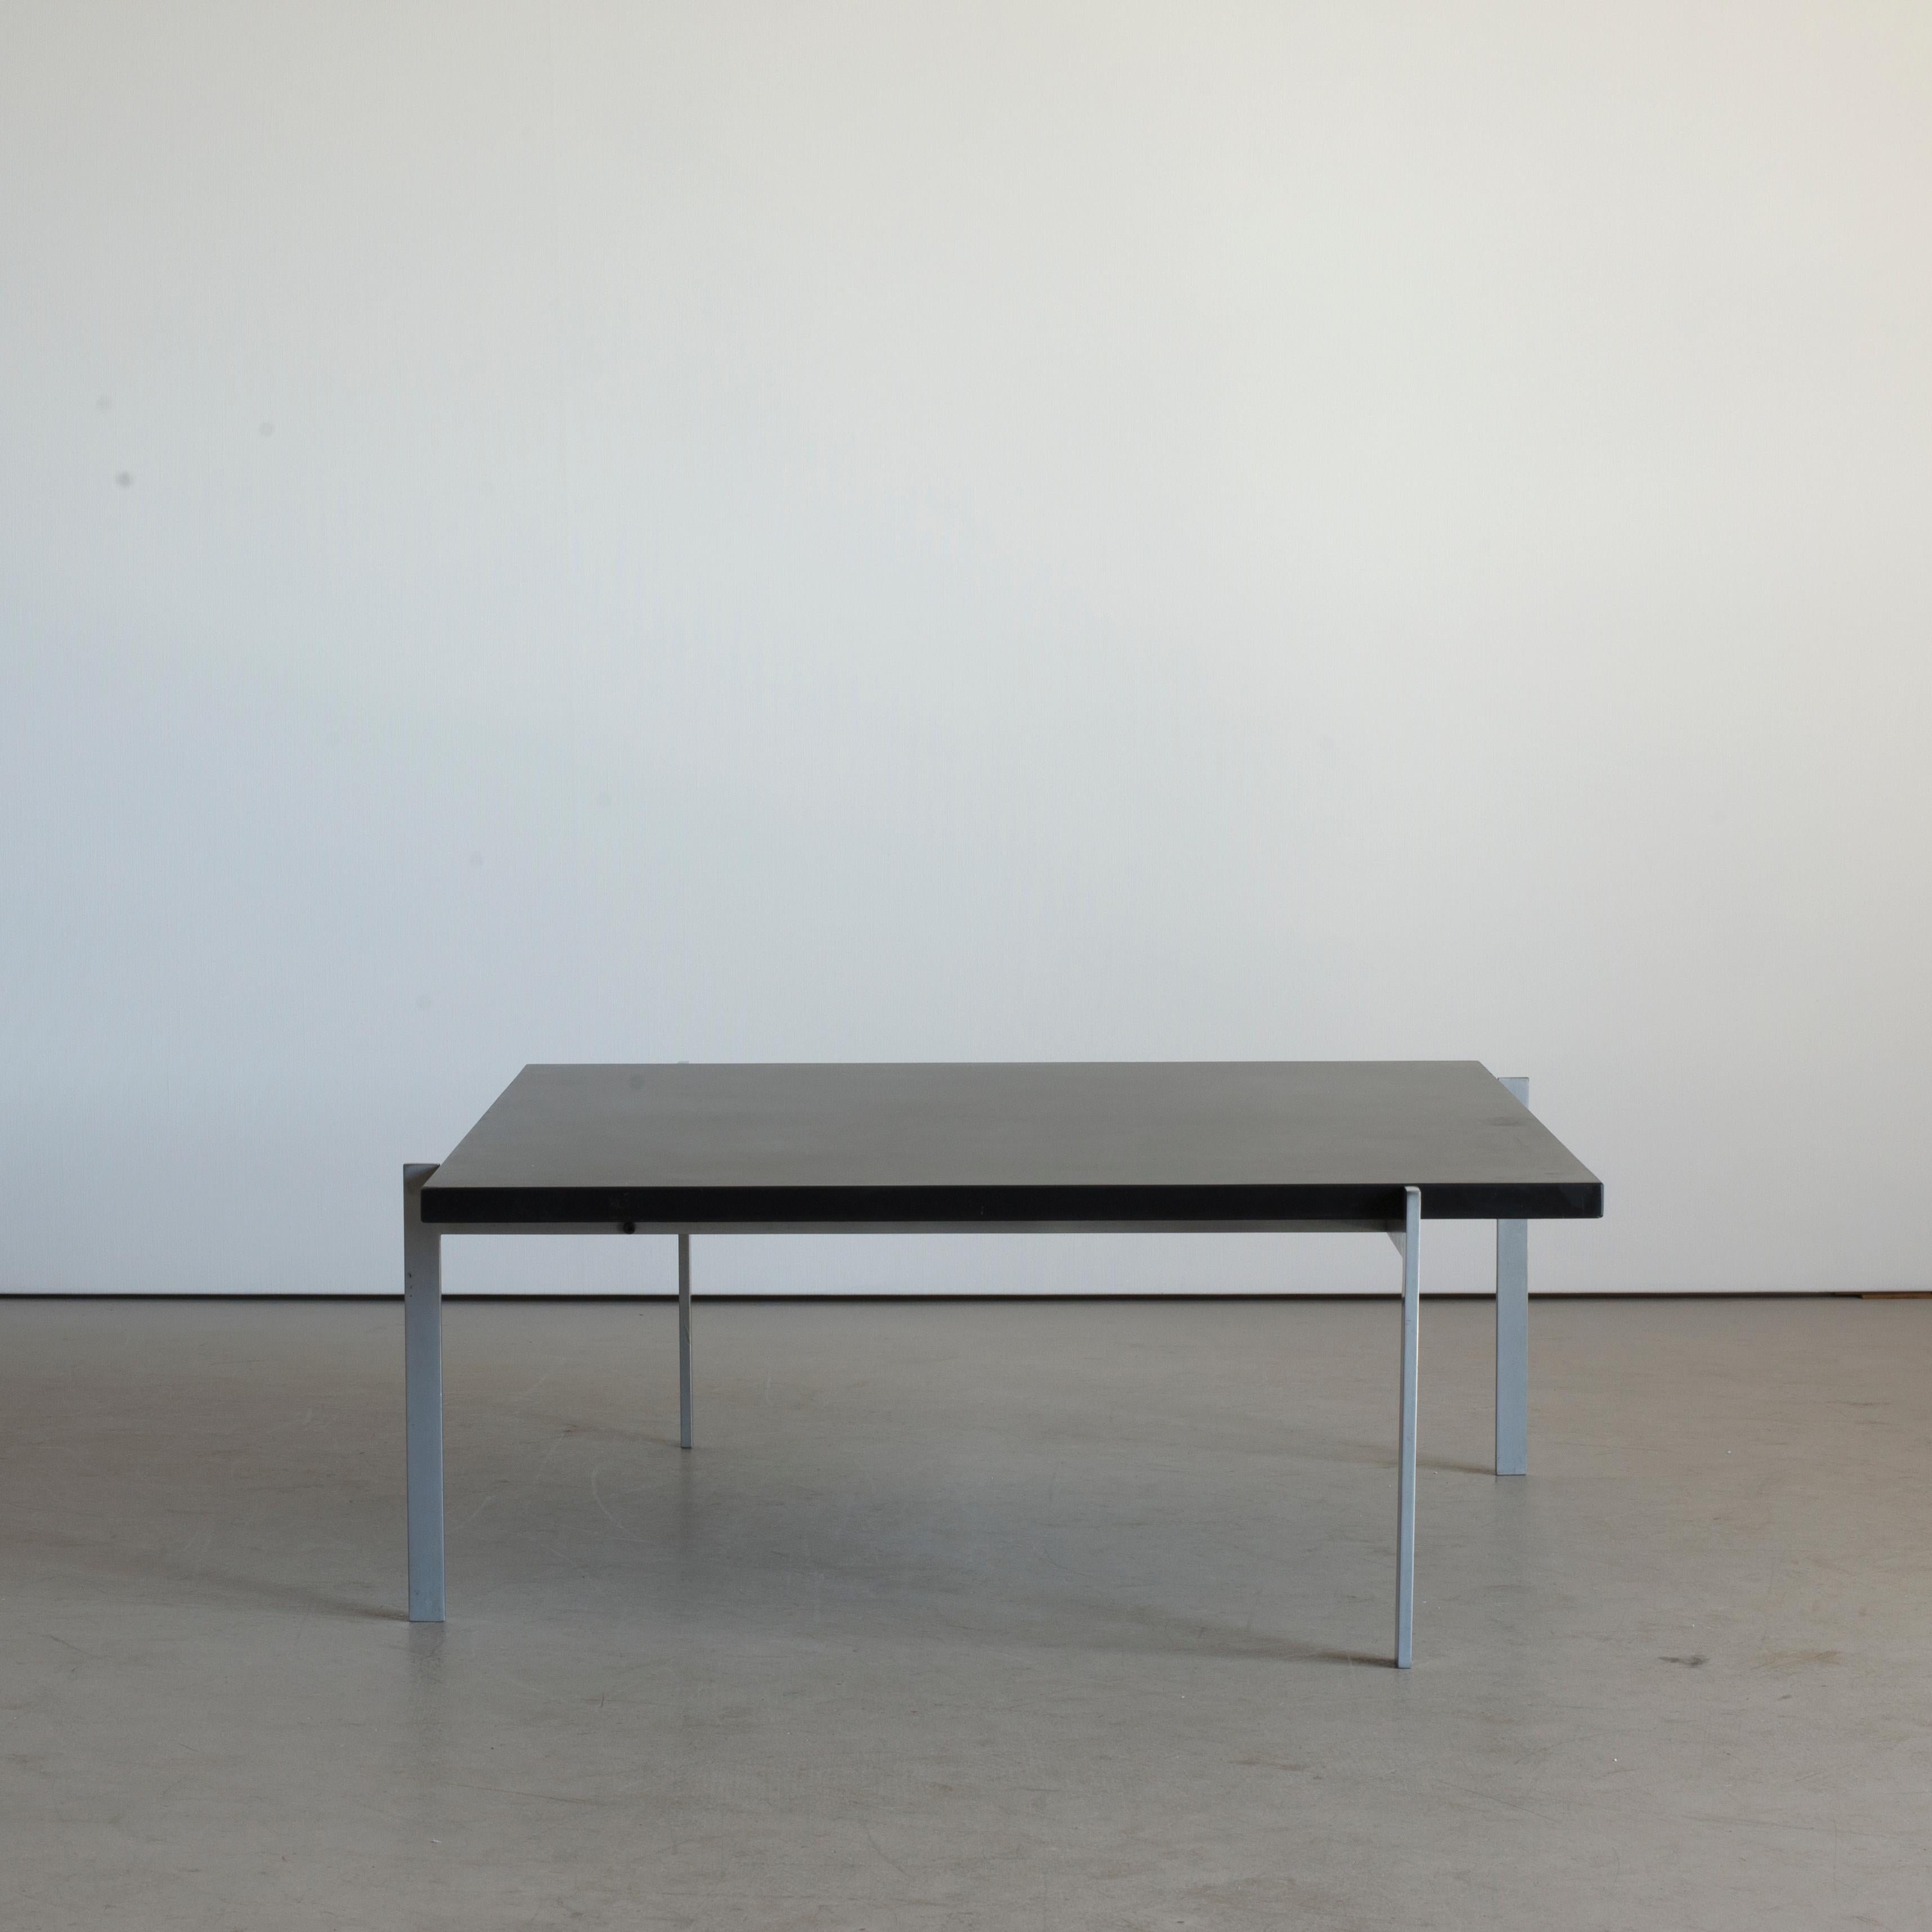 Poul Kjaerholm coffee table PK61. Executed by E. Kold Christensen, Denmark.

Dull chromium plated steel and top of black slate. Marked E. Kold Christensen.